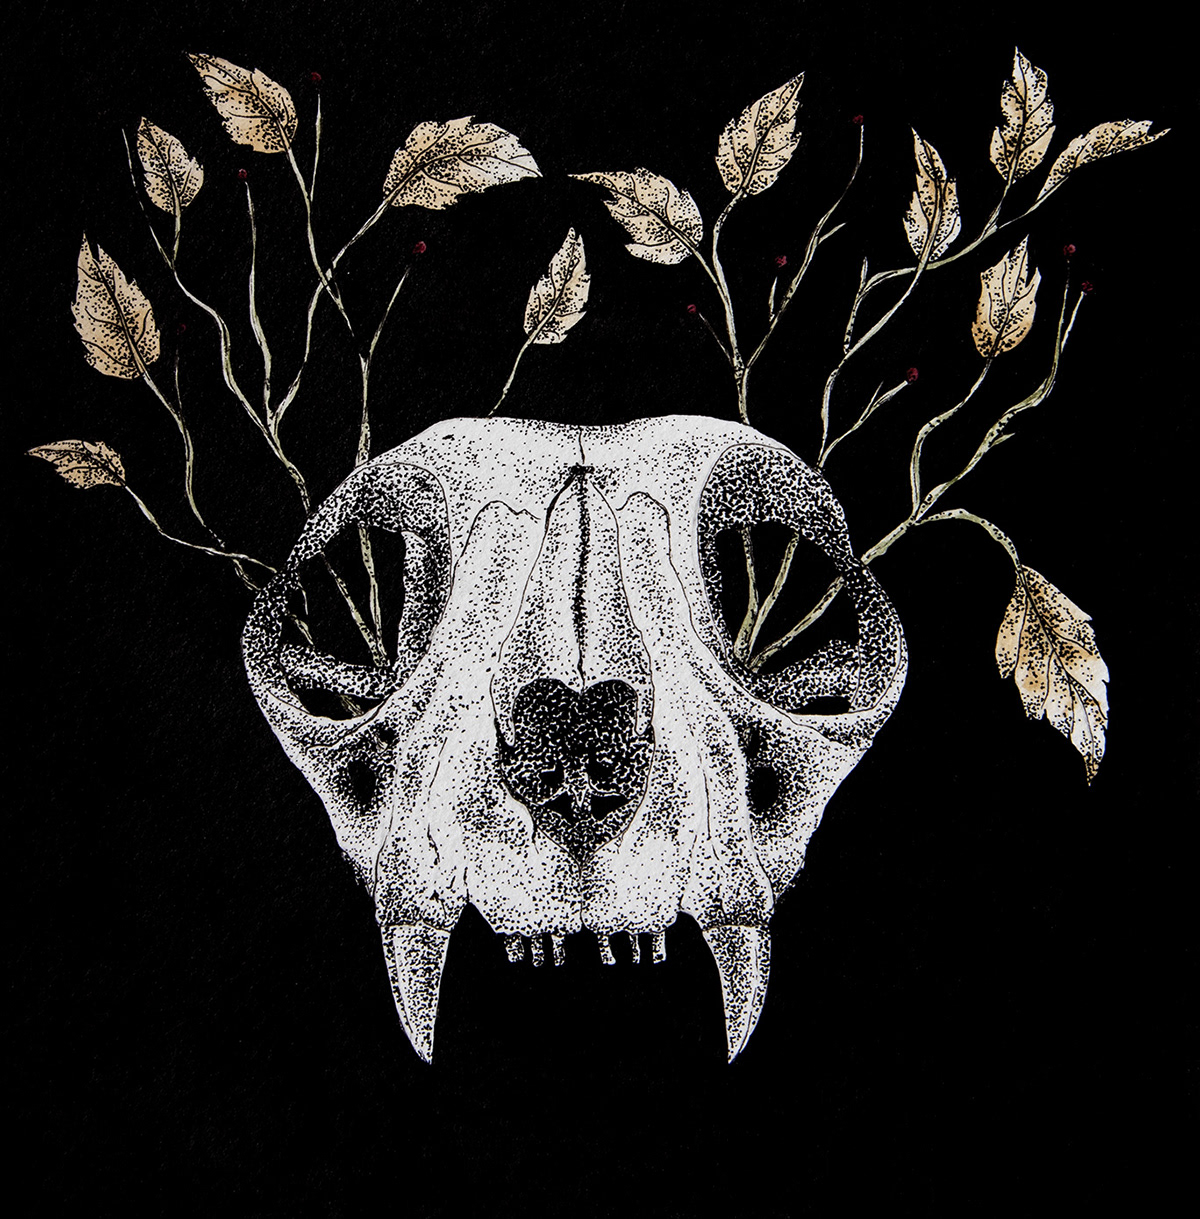 acuarelas Cat Craneo estilografos Gato ilustración análoga naturaleza scientific illustratios skull vintage